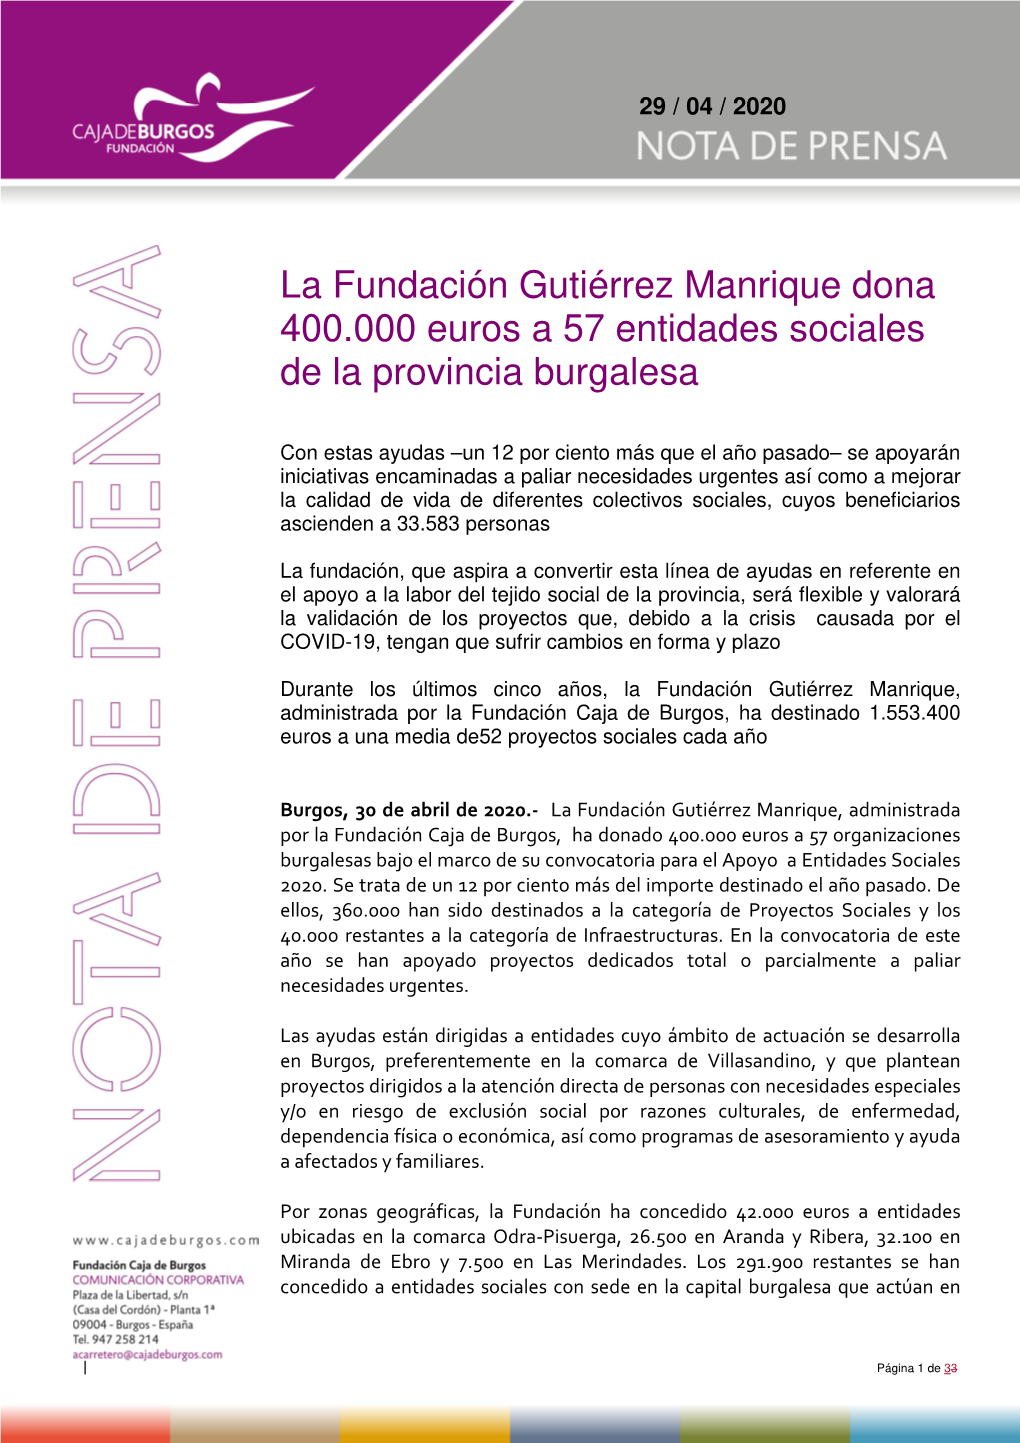 La Fundación Gutiérrez Manrique Dona 400.000 Euros a 57 Entidades Sociales De La Provincia Burgalesa